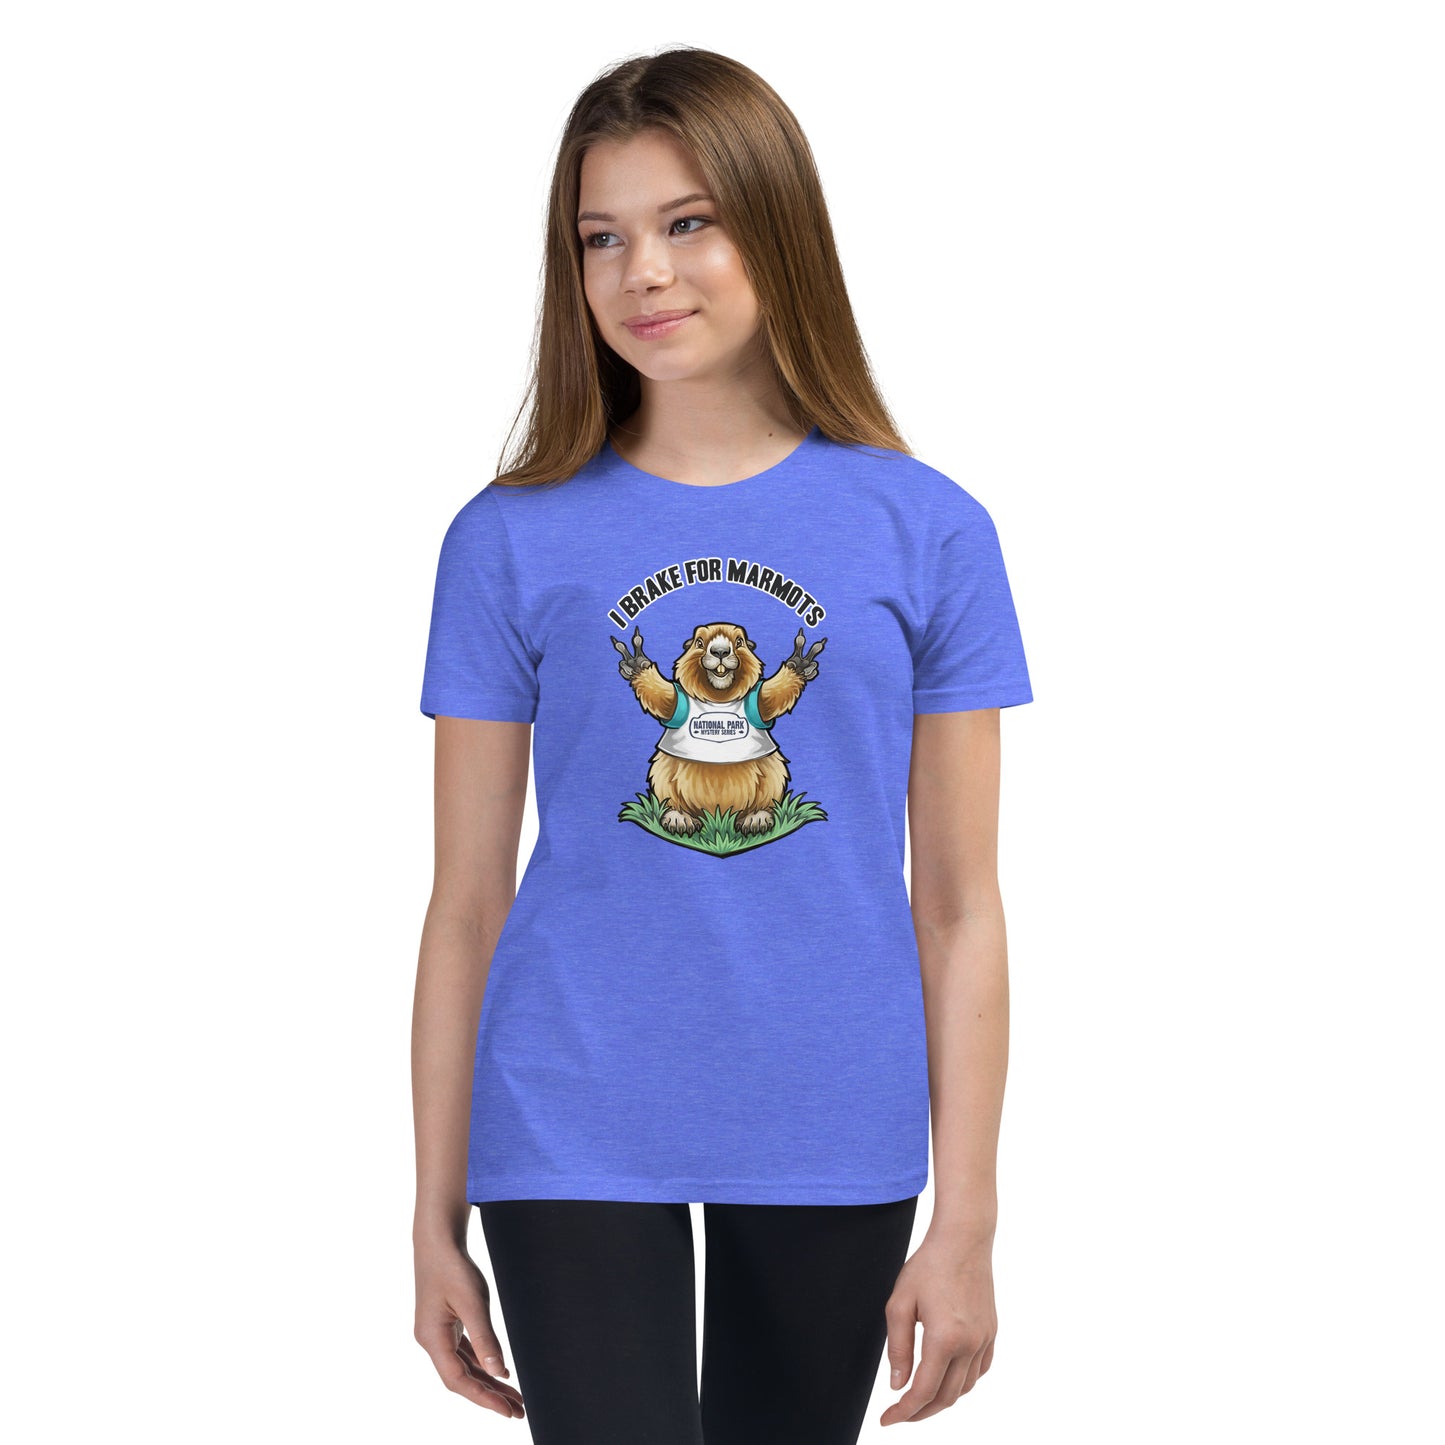 Marmot T-Shirt - Youth Sized